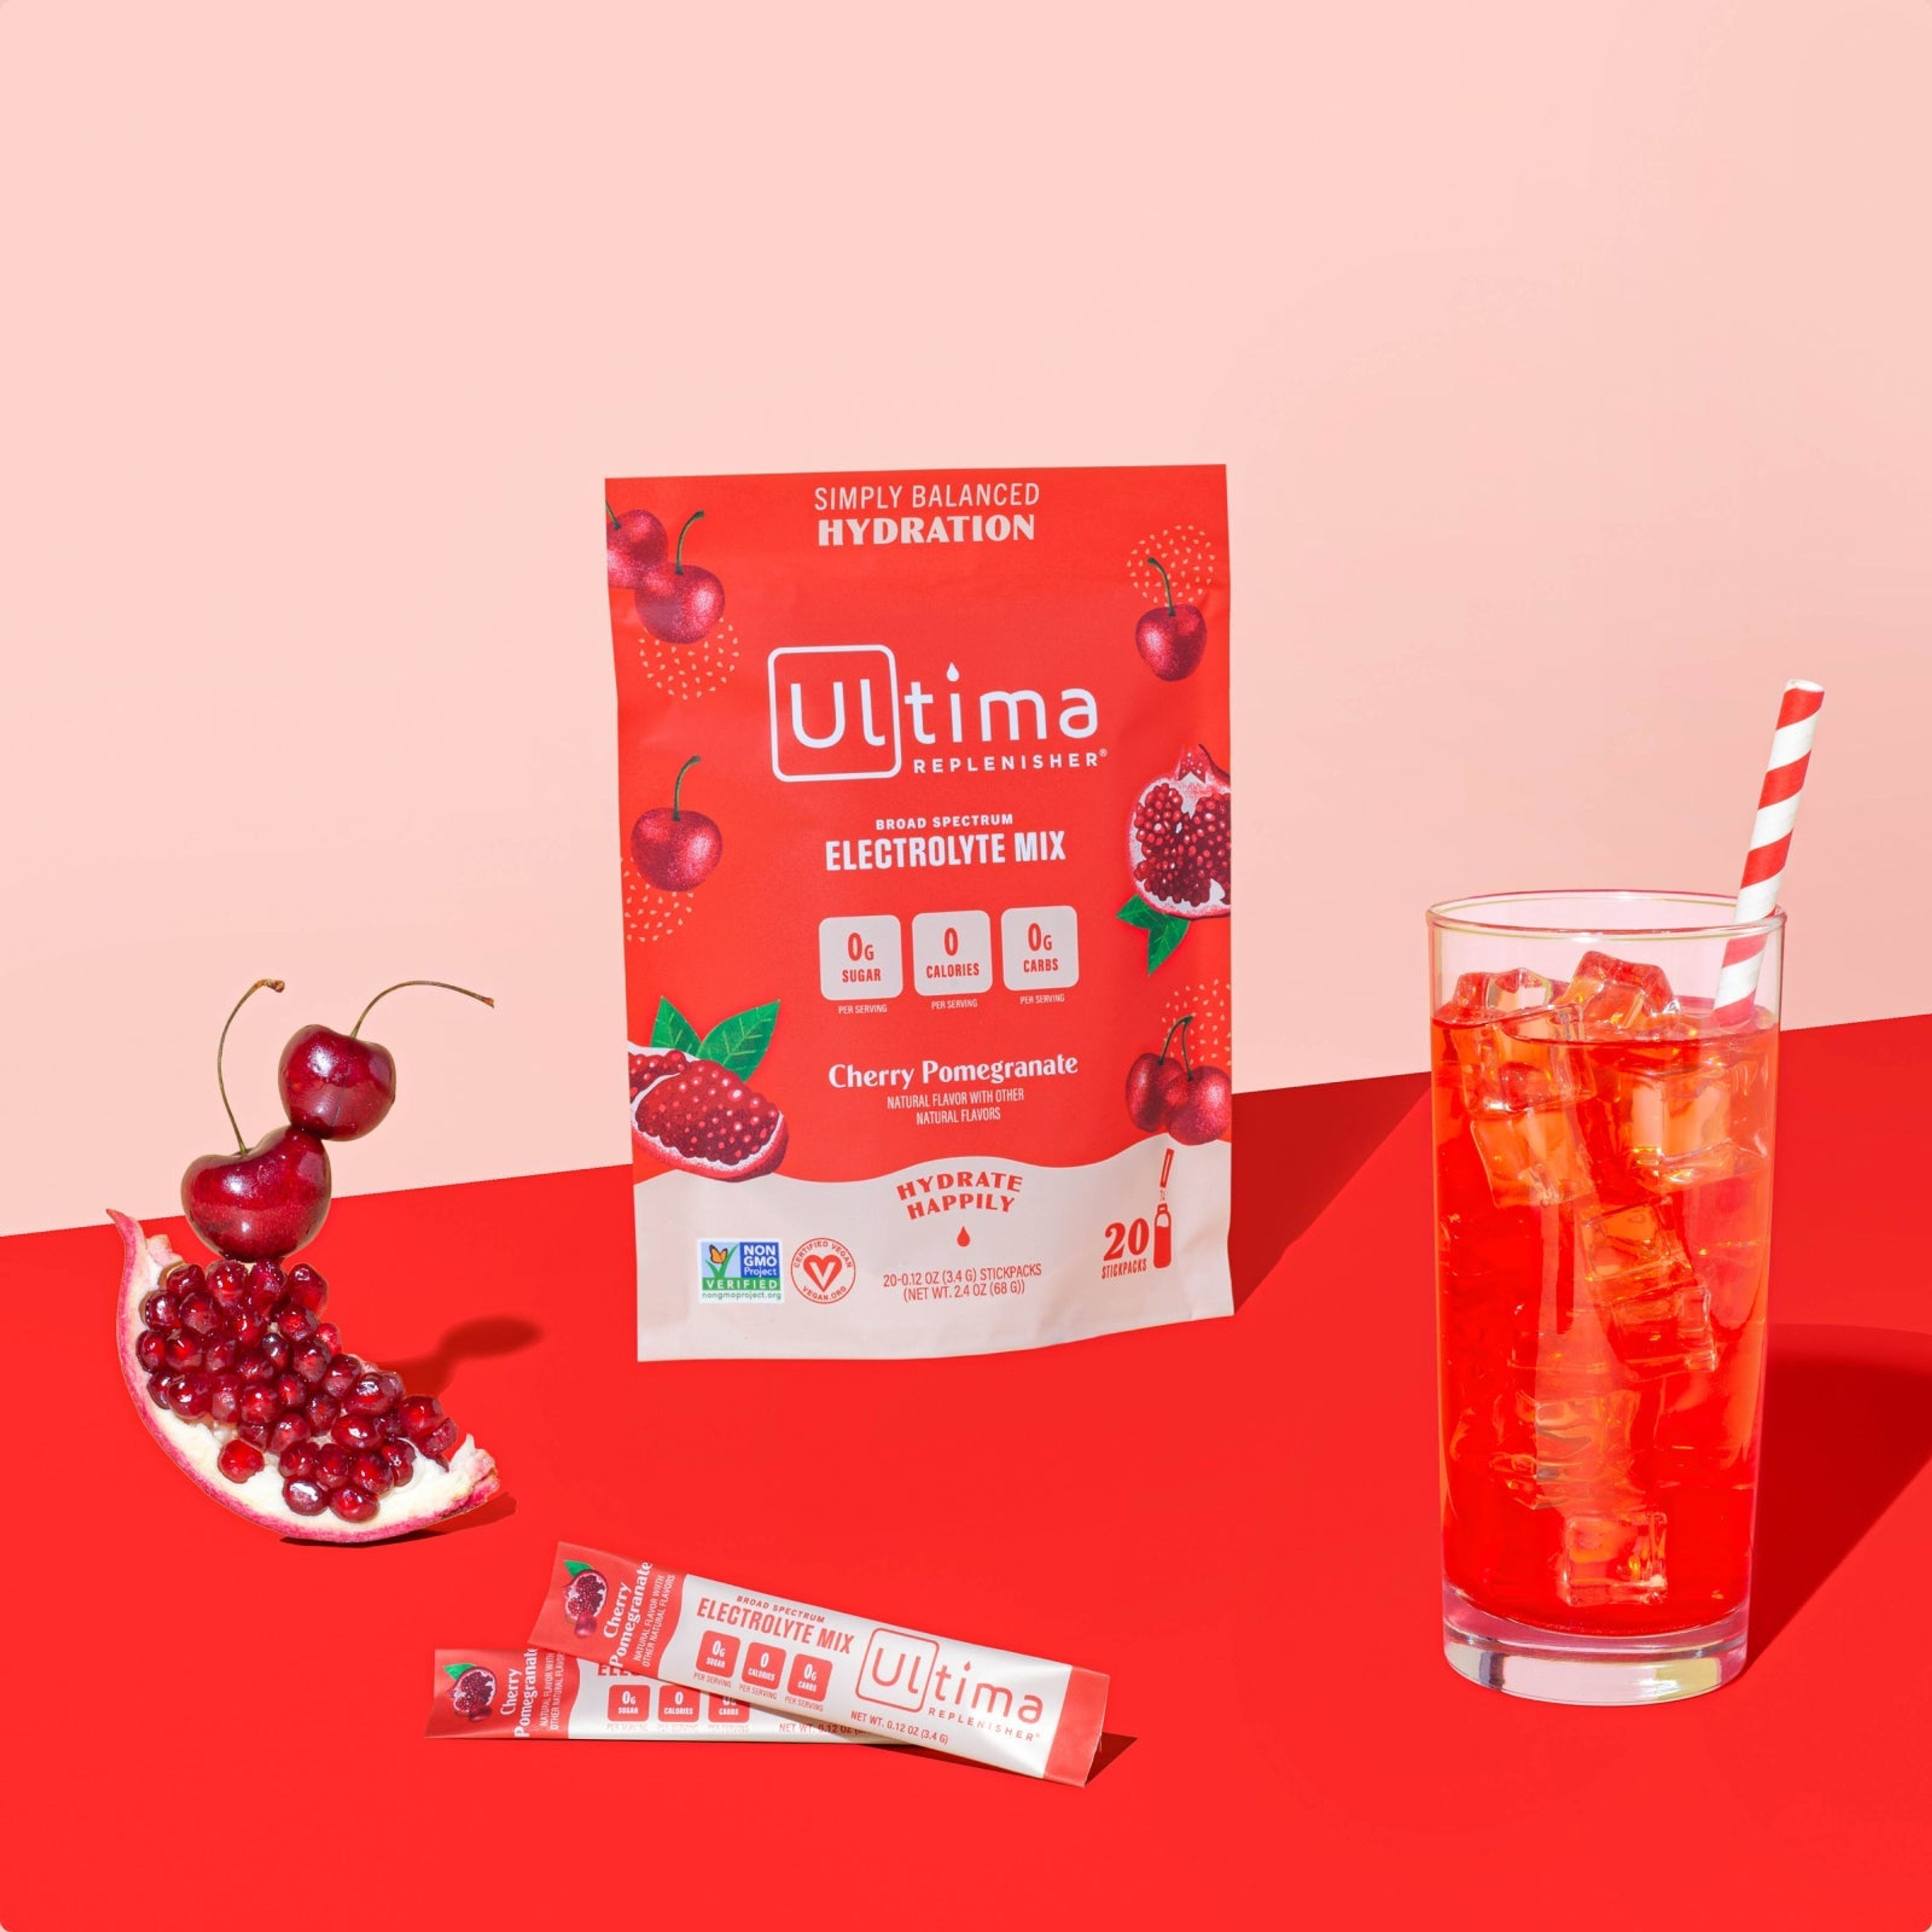 Cherry Pomegranate electrolyte drink mix